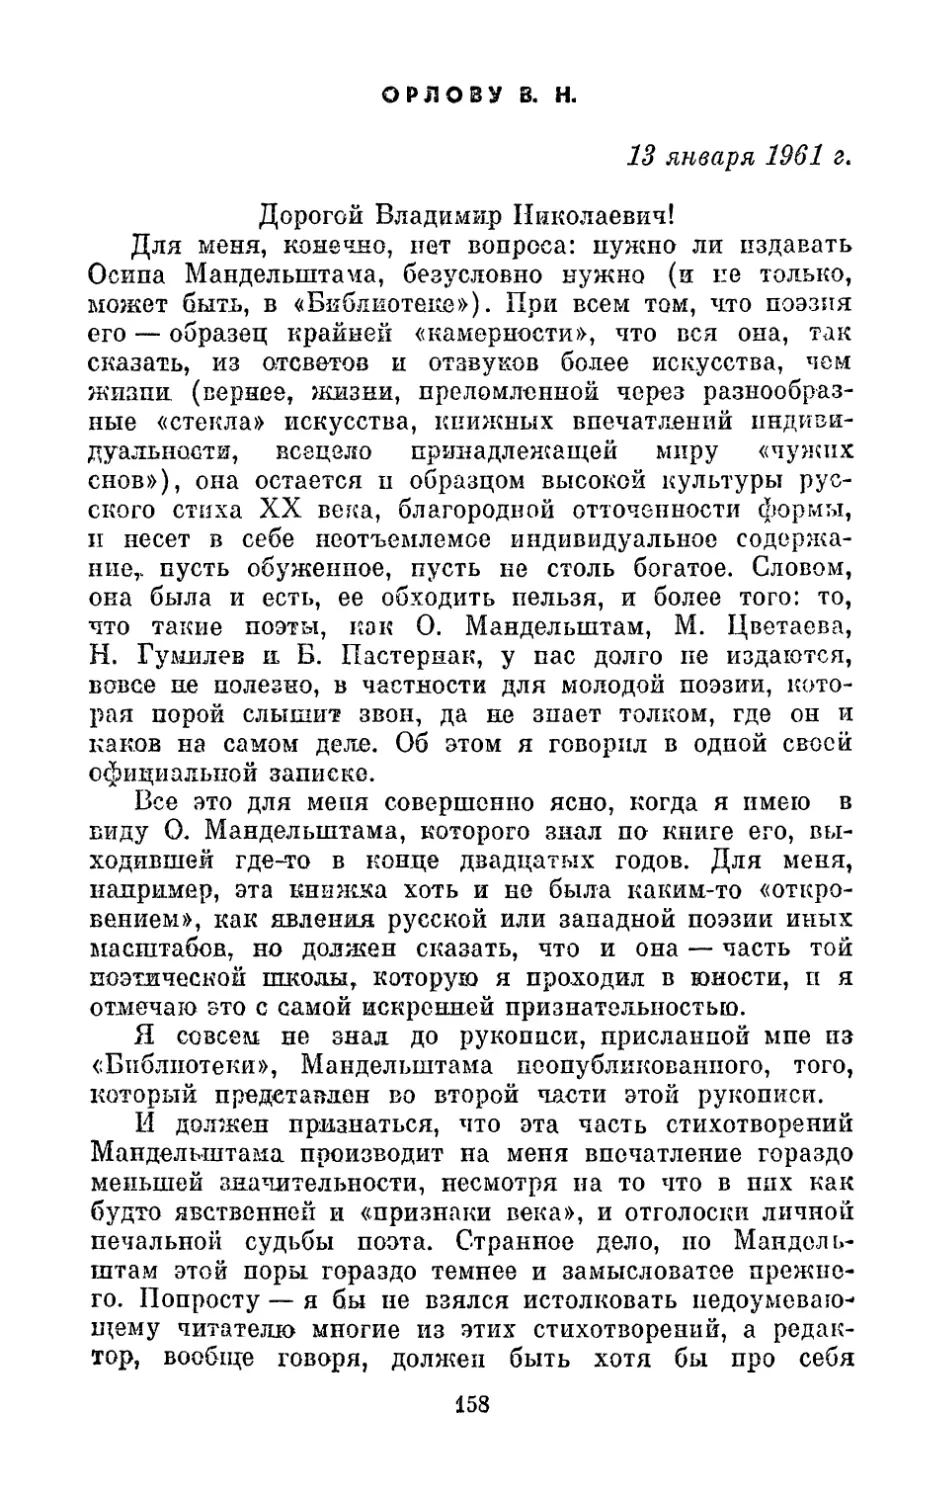 Орлову В. Н., 13 января 1961 г.